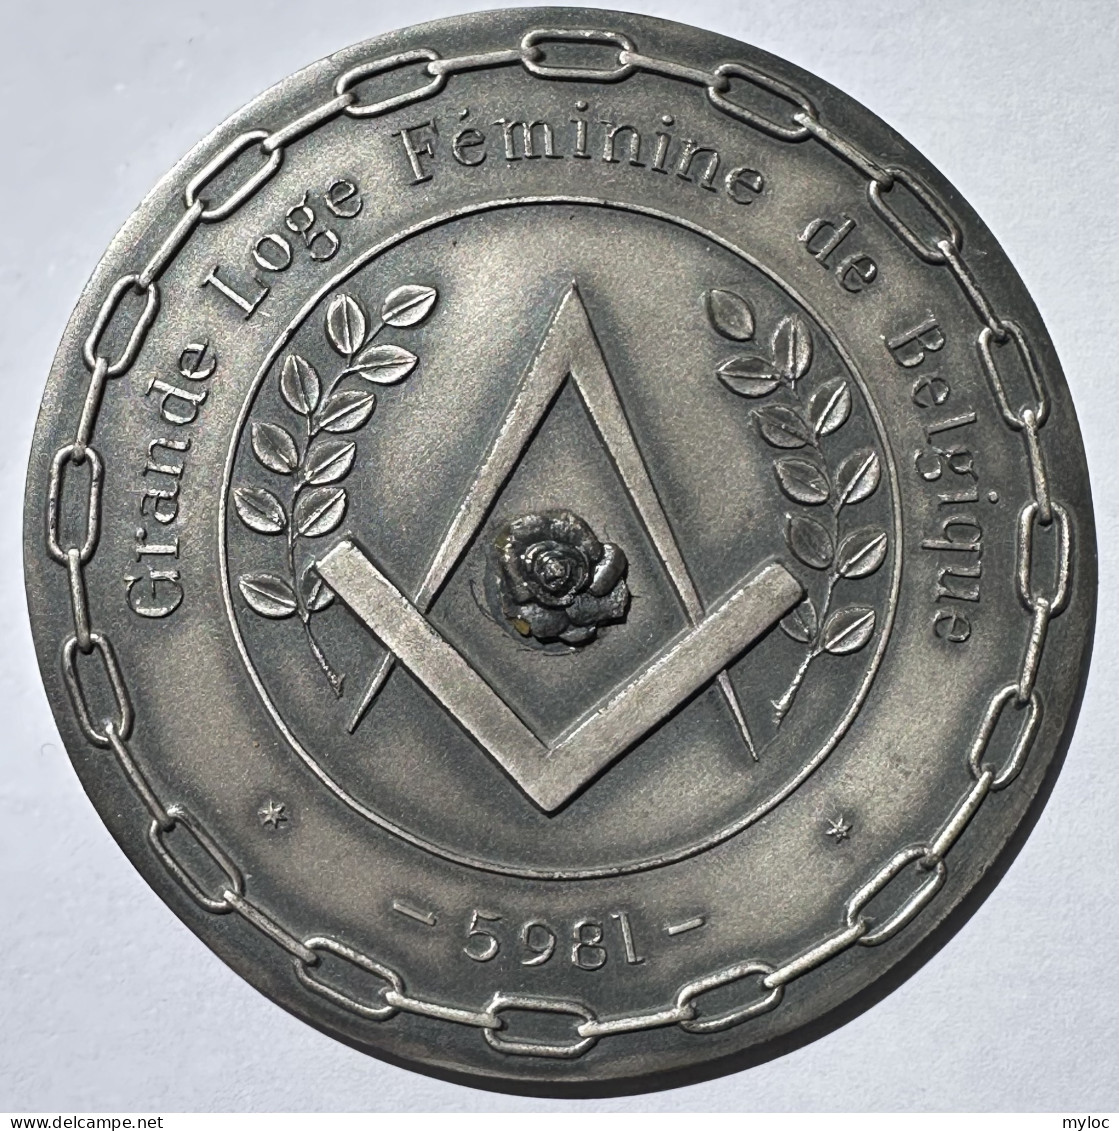 Franc-Maçonnerie. Médaille. Grande Loge Féminine De Belgique. Souvenir De La Création De L'Obédience 17/10/1981.  - Unternehmen